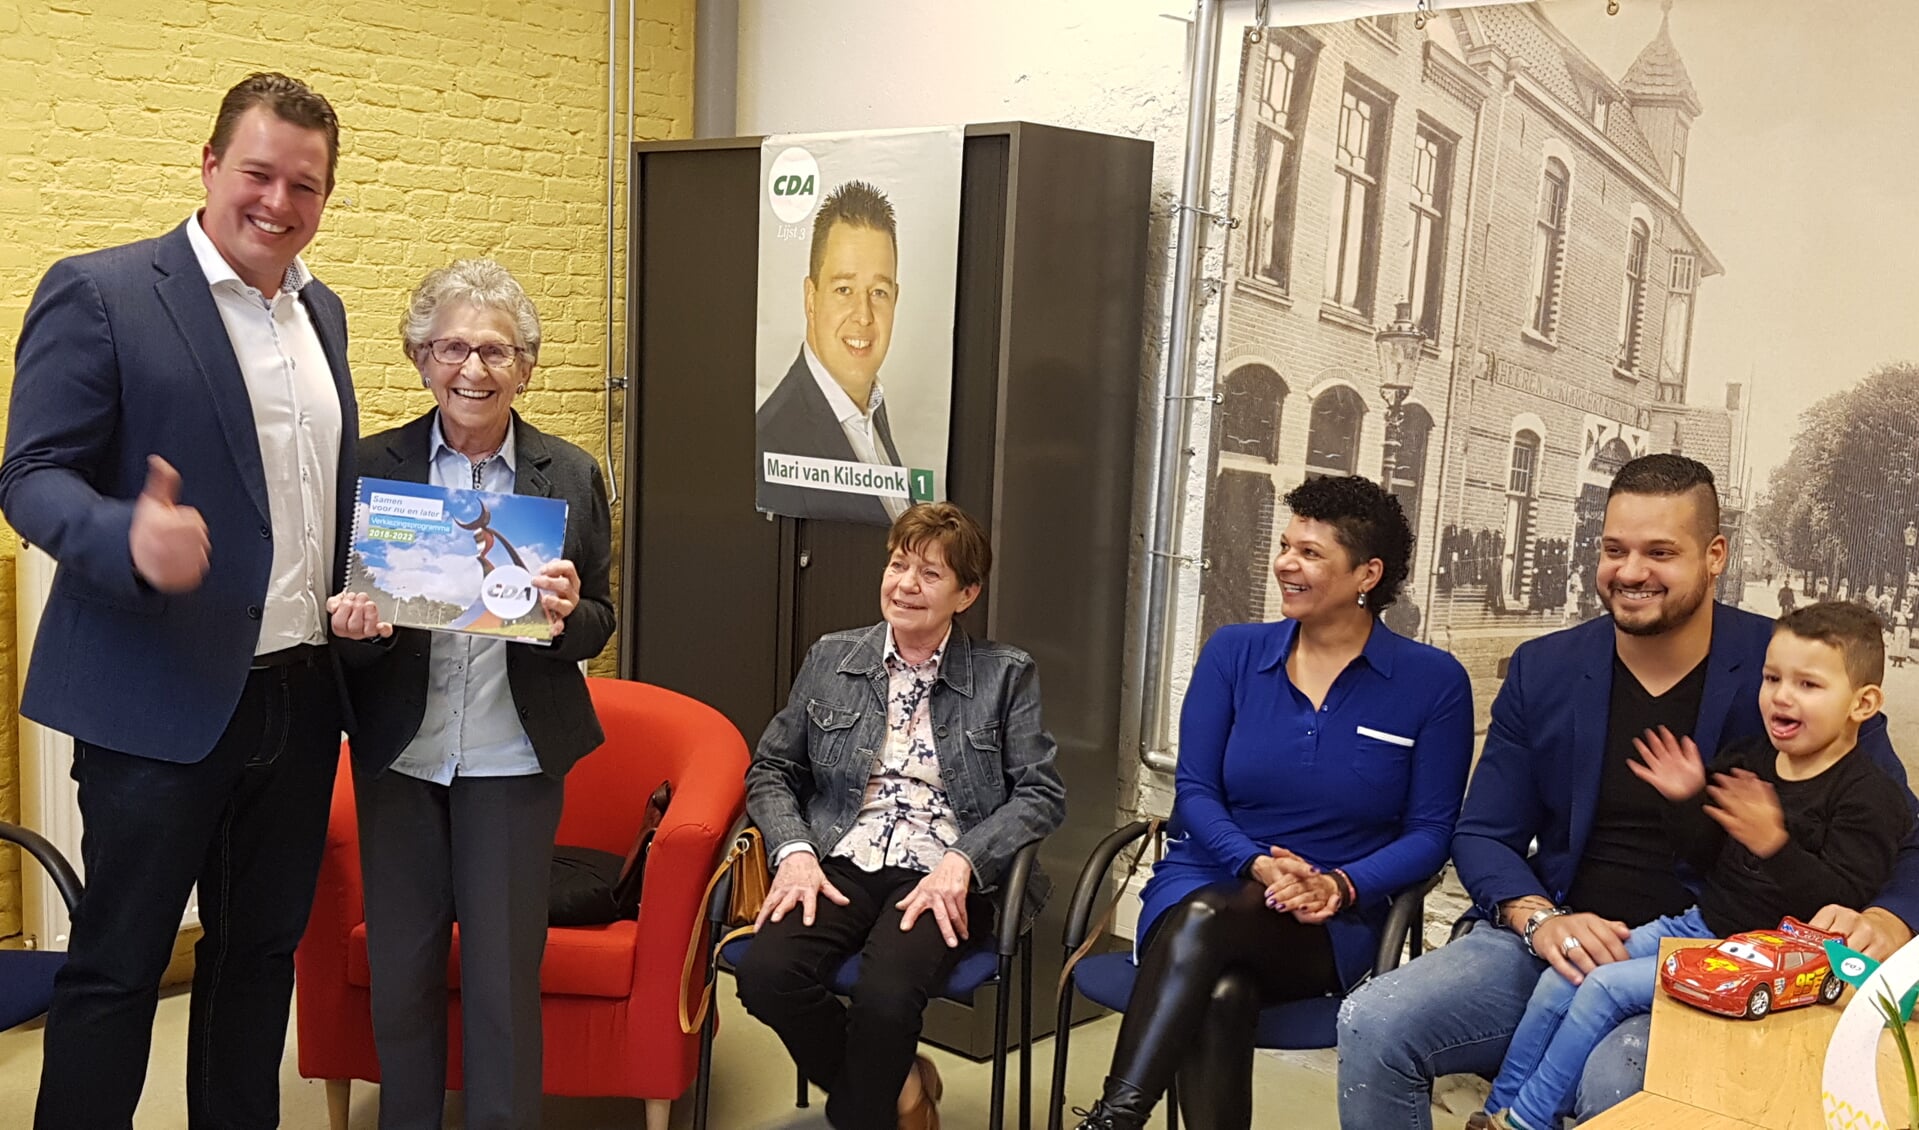 CDA-lijsttrekker Mari van Kilsdonk overhandigt het verkiezingsprogramma aan de 91-jarige Truus Pelzer - Van der Doelen.